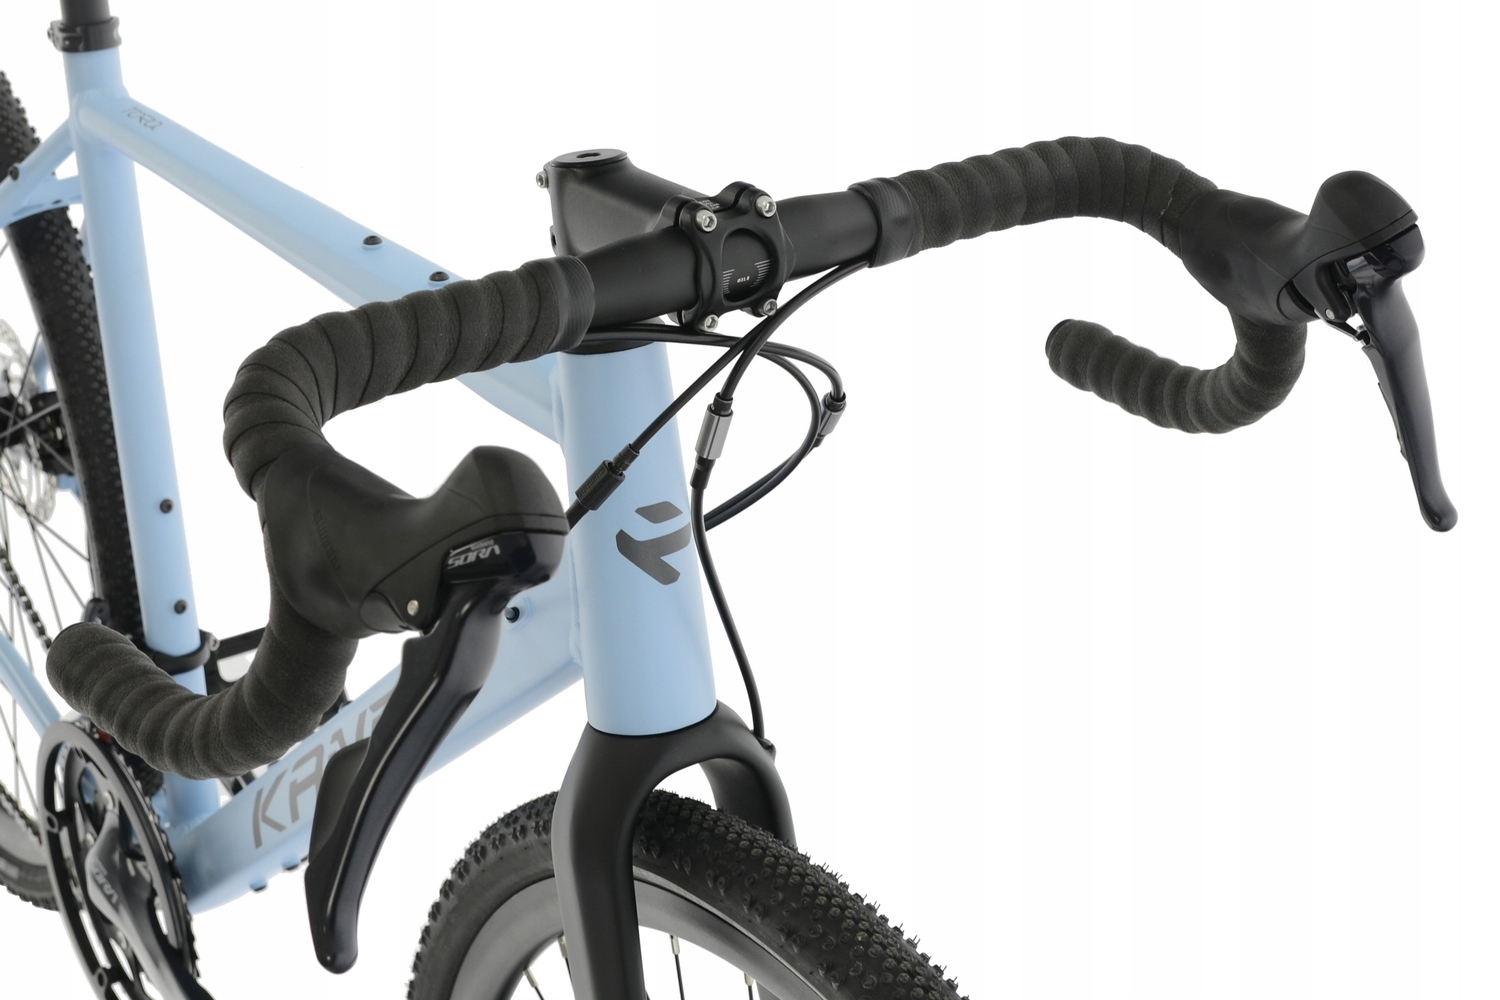 Rower Gravel Kands 28 TORO r56cm błękit SORA doskonały rower w super cenie